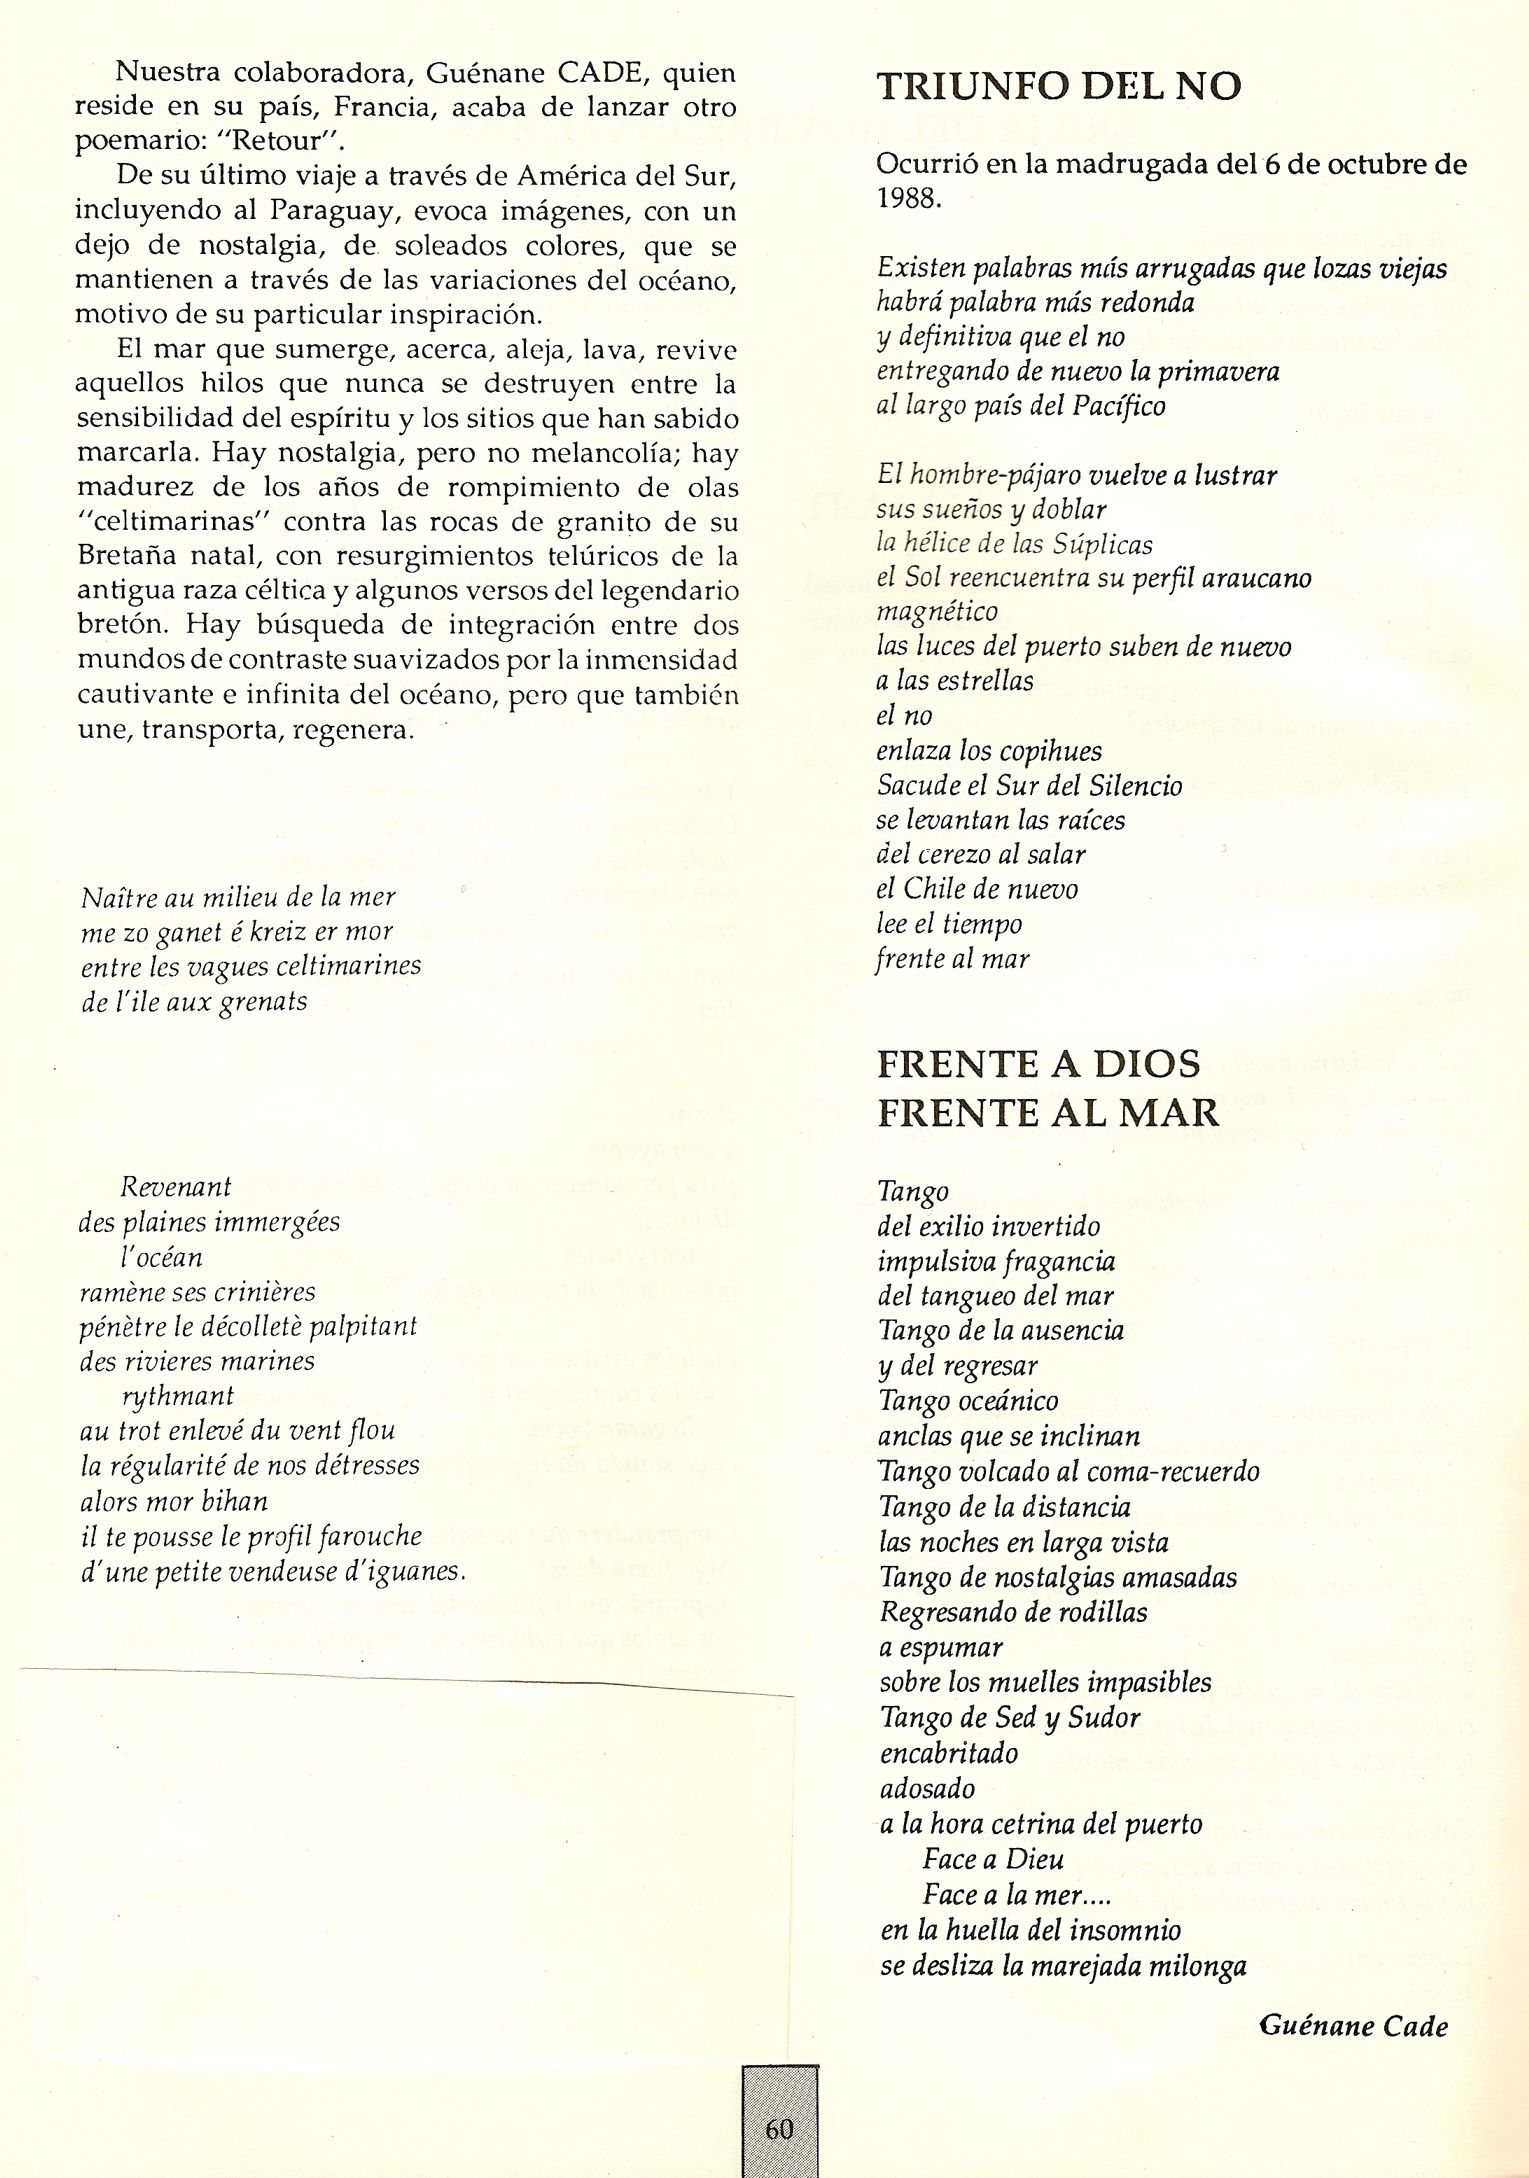 Guénane - La Revista Critica, sept 1990.